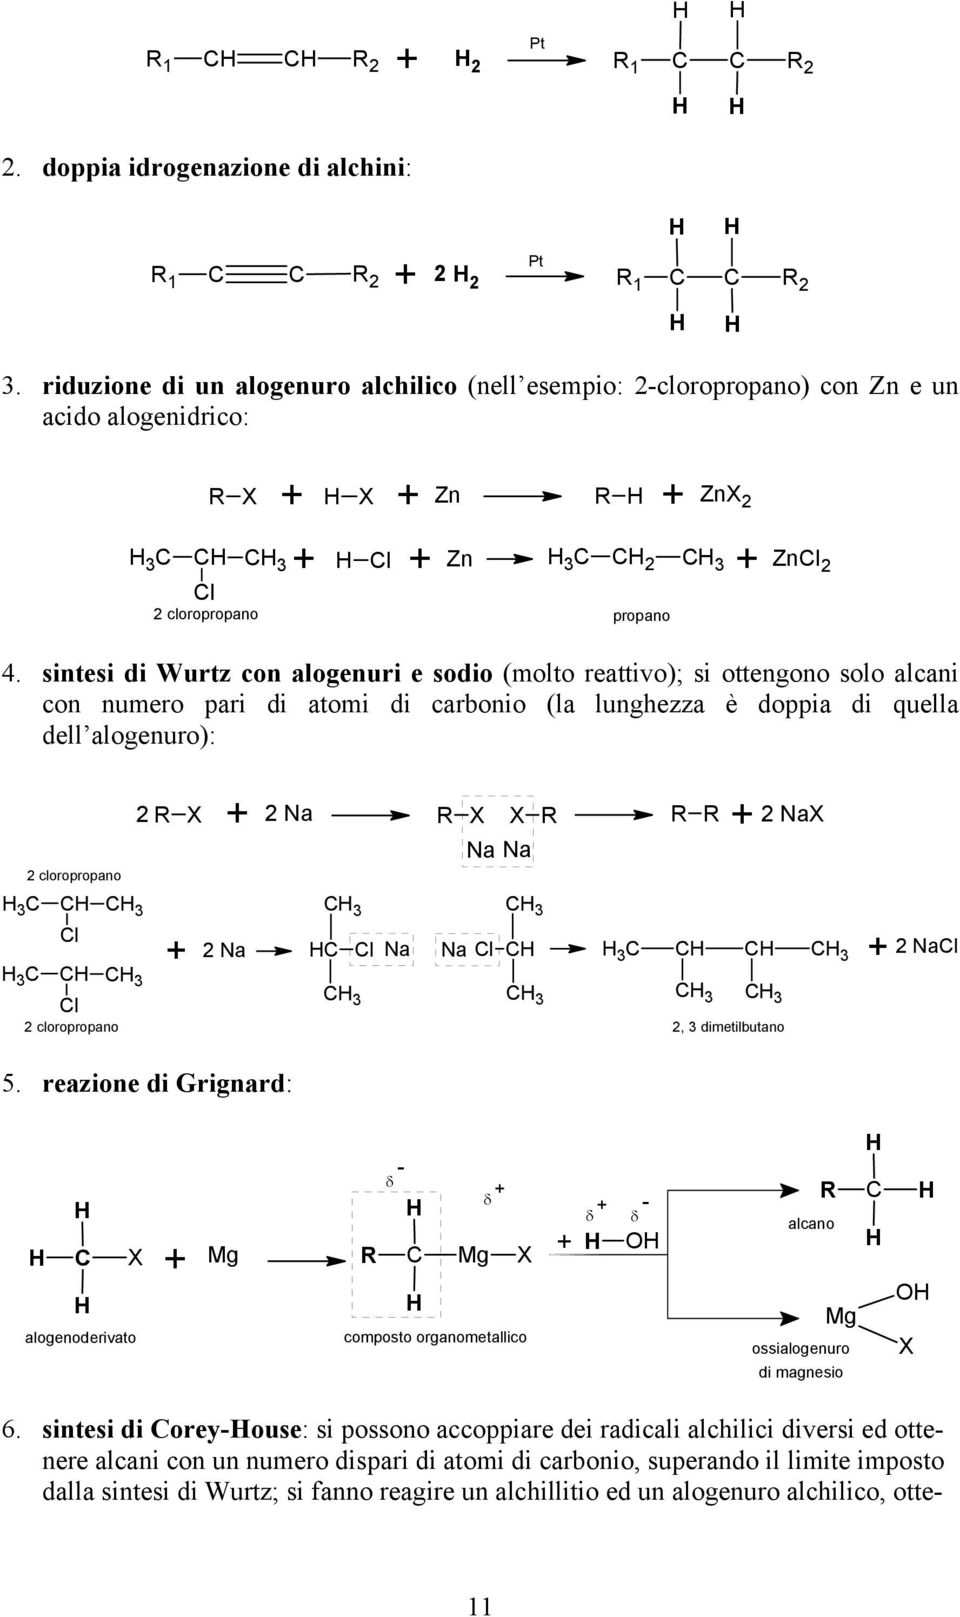 sintesi di Wurtz con alogenuri e sodio (molto reattivo); si ottengono solo alcani con numero pari di atomi di carbonio (la lunghezza è doppia di quella dell alogenuro): 2 cloropropano 3 C C C 3 Cl 3